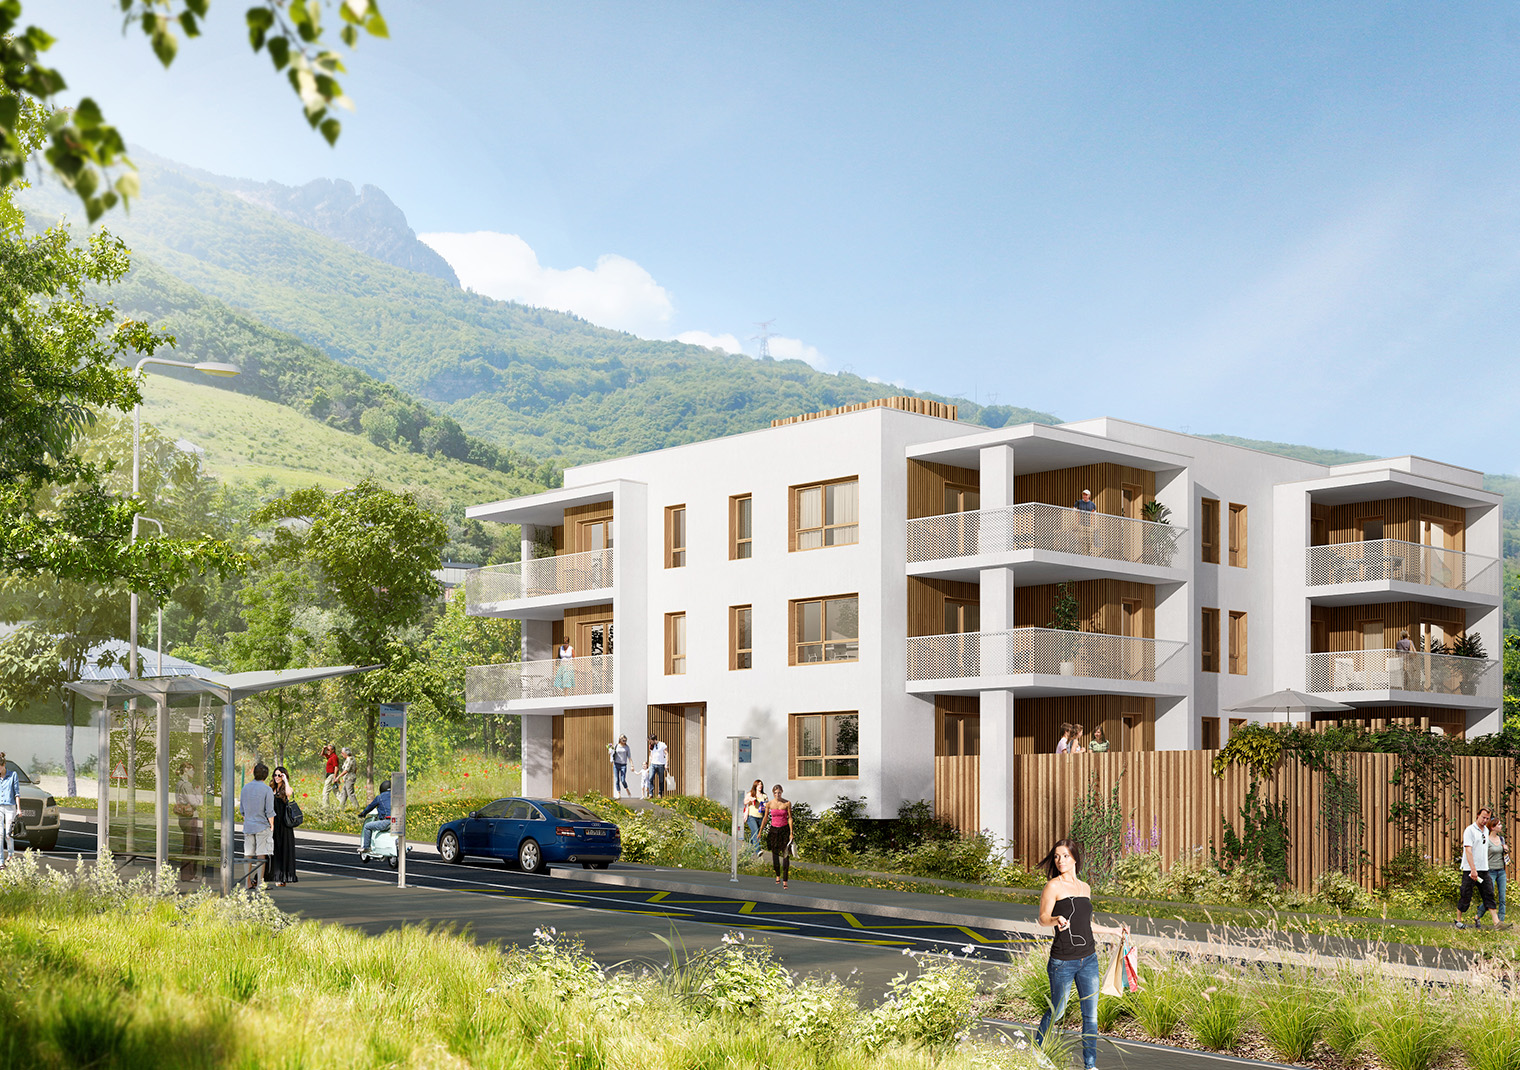 Visuelle extrait de l'identité visuelle du Val vert, programme immobilier neuf, créée pour Grenoble Habitat par Caramel & Paprika (Perspective 3D Basilico Design) - Vignette projet